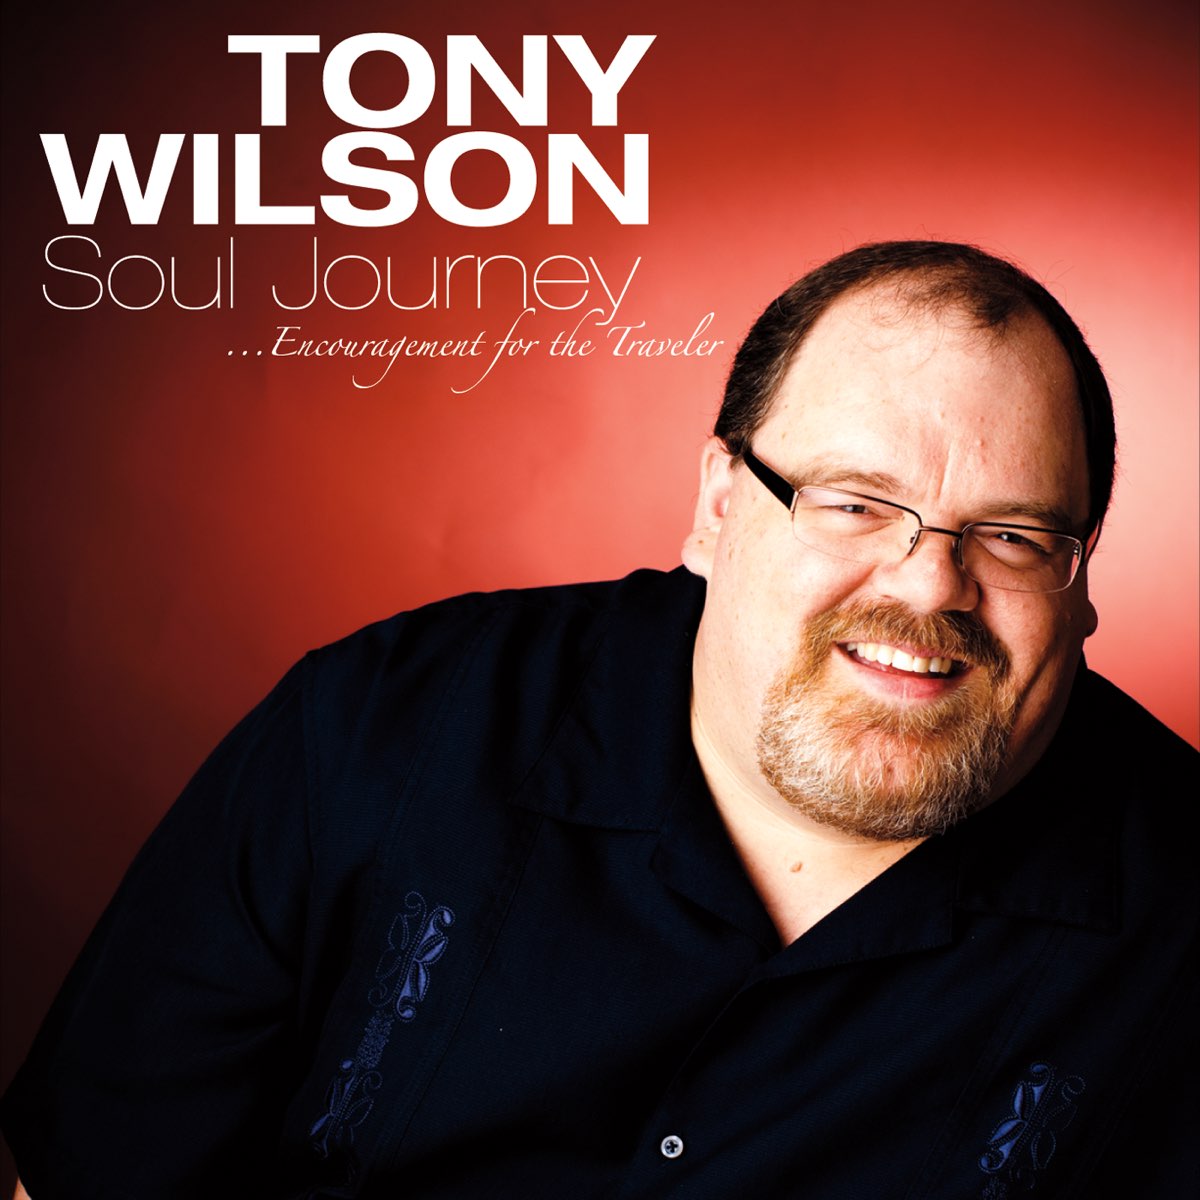 Tony Wilson.